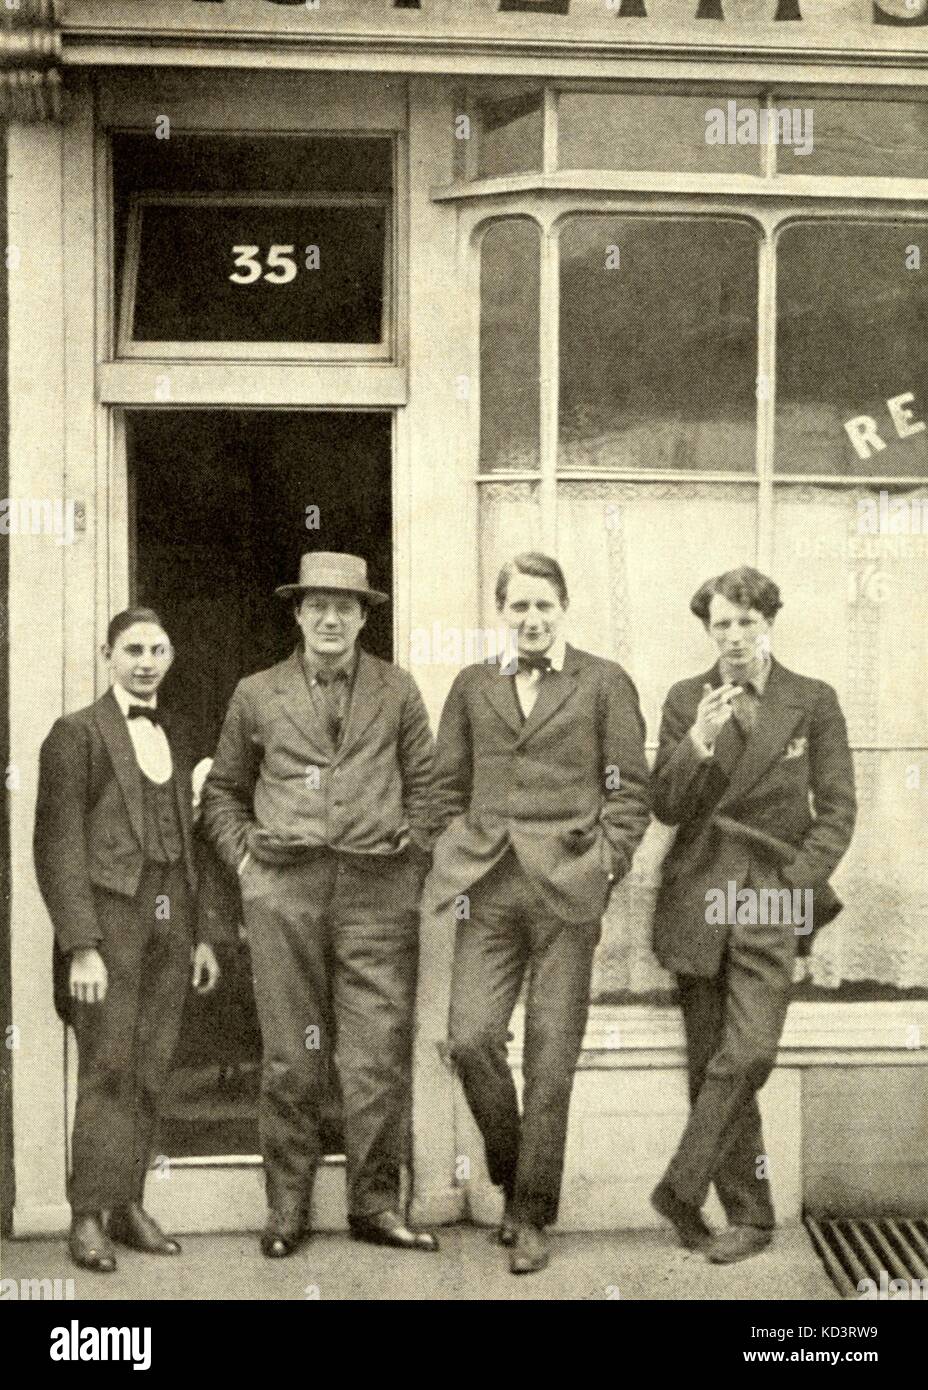 Démoniste, Peter. (Également appelé P. Heseltine) (ch. 1915) de gauche à droite : inconnu, Jacob Epstein (avec chapeau), Peter Warlock Evan Morgan. Compositeur et musicologue français (1894-1930) Banque D'Images